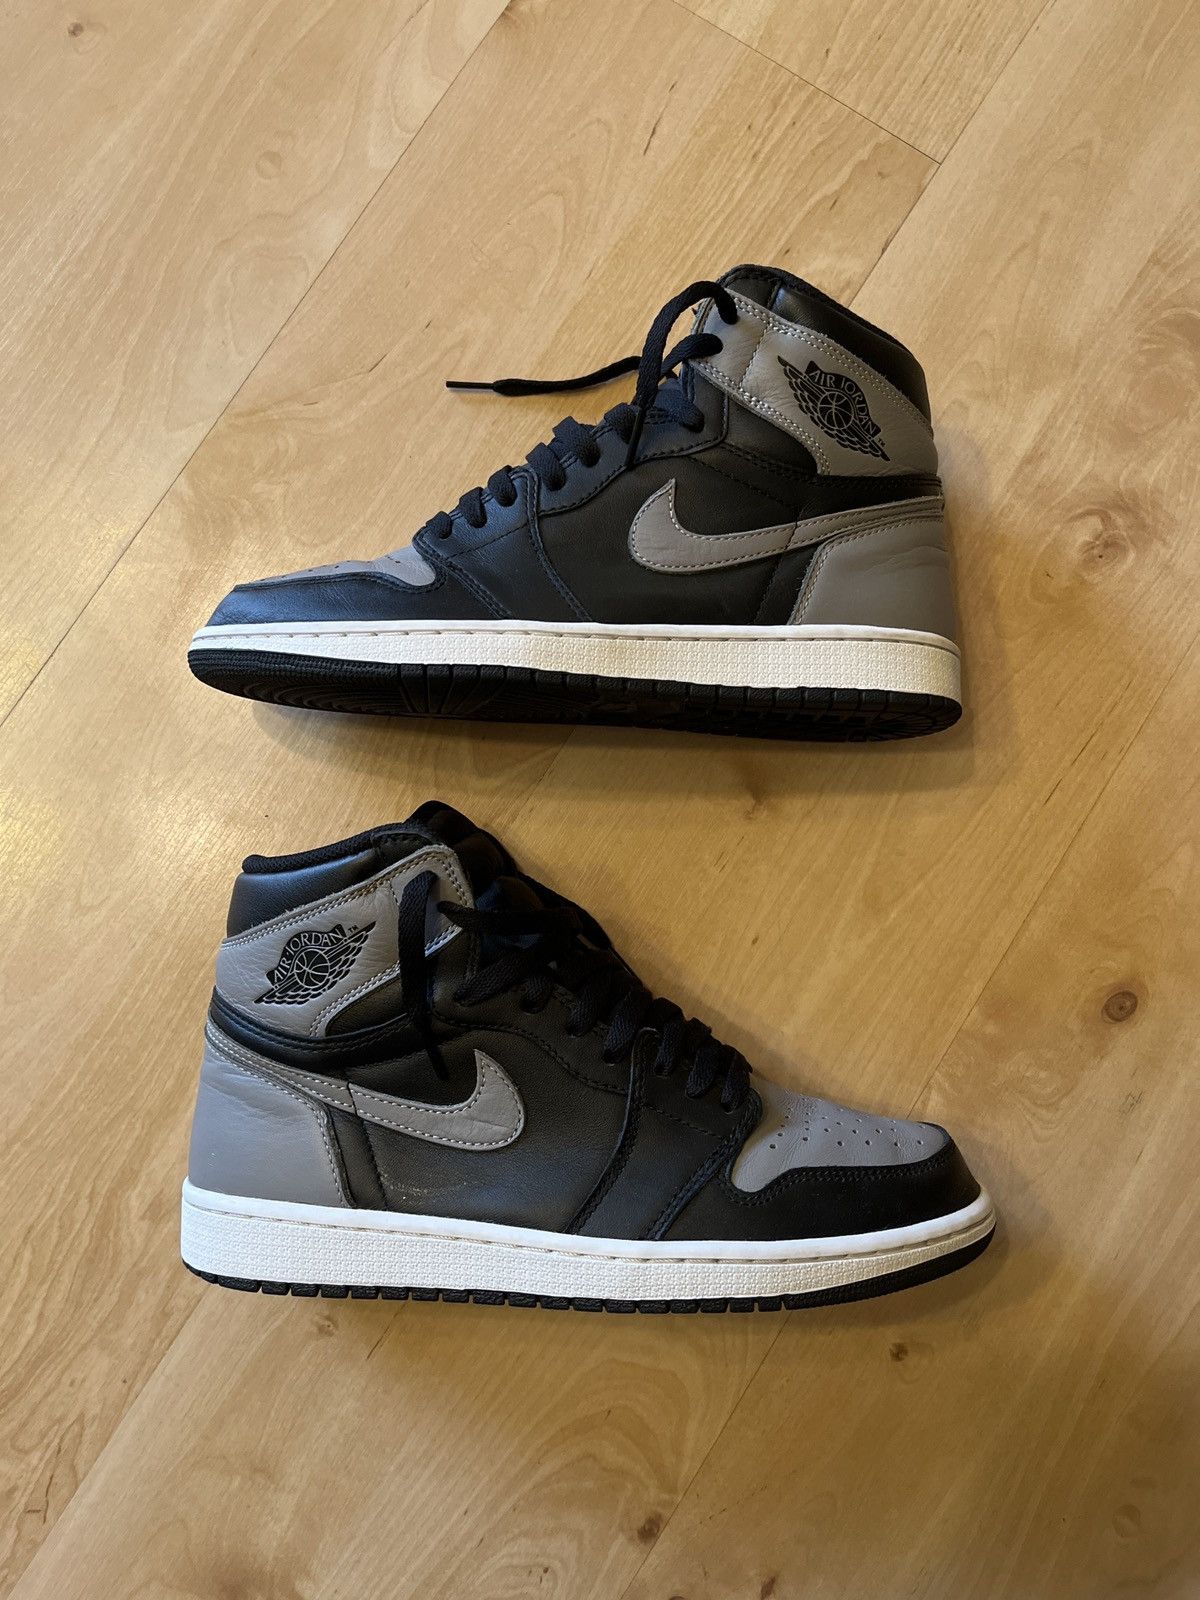 Pre-owned Jordan Brand Air Jordan 1 Shadow 2018 - Size 9.5 Shoes In Grey